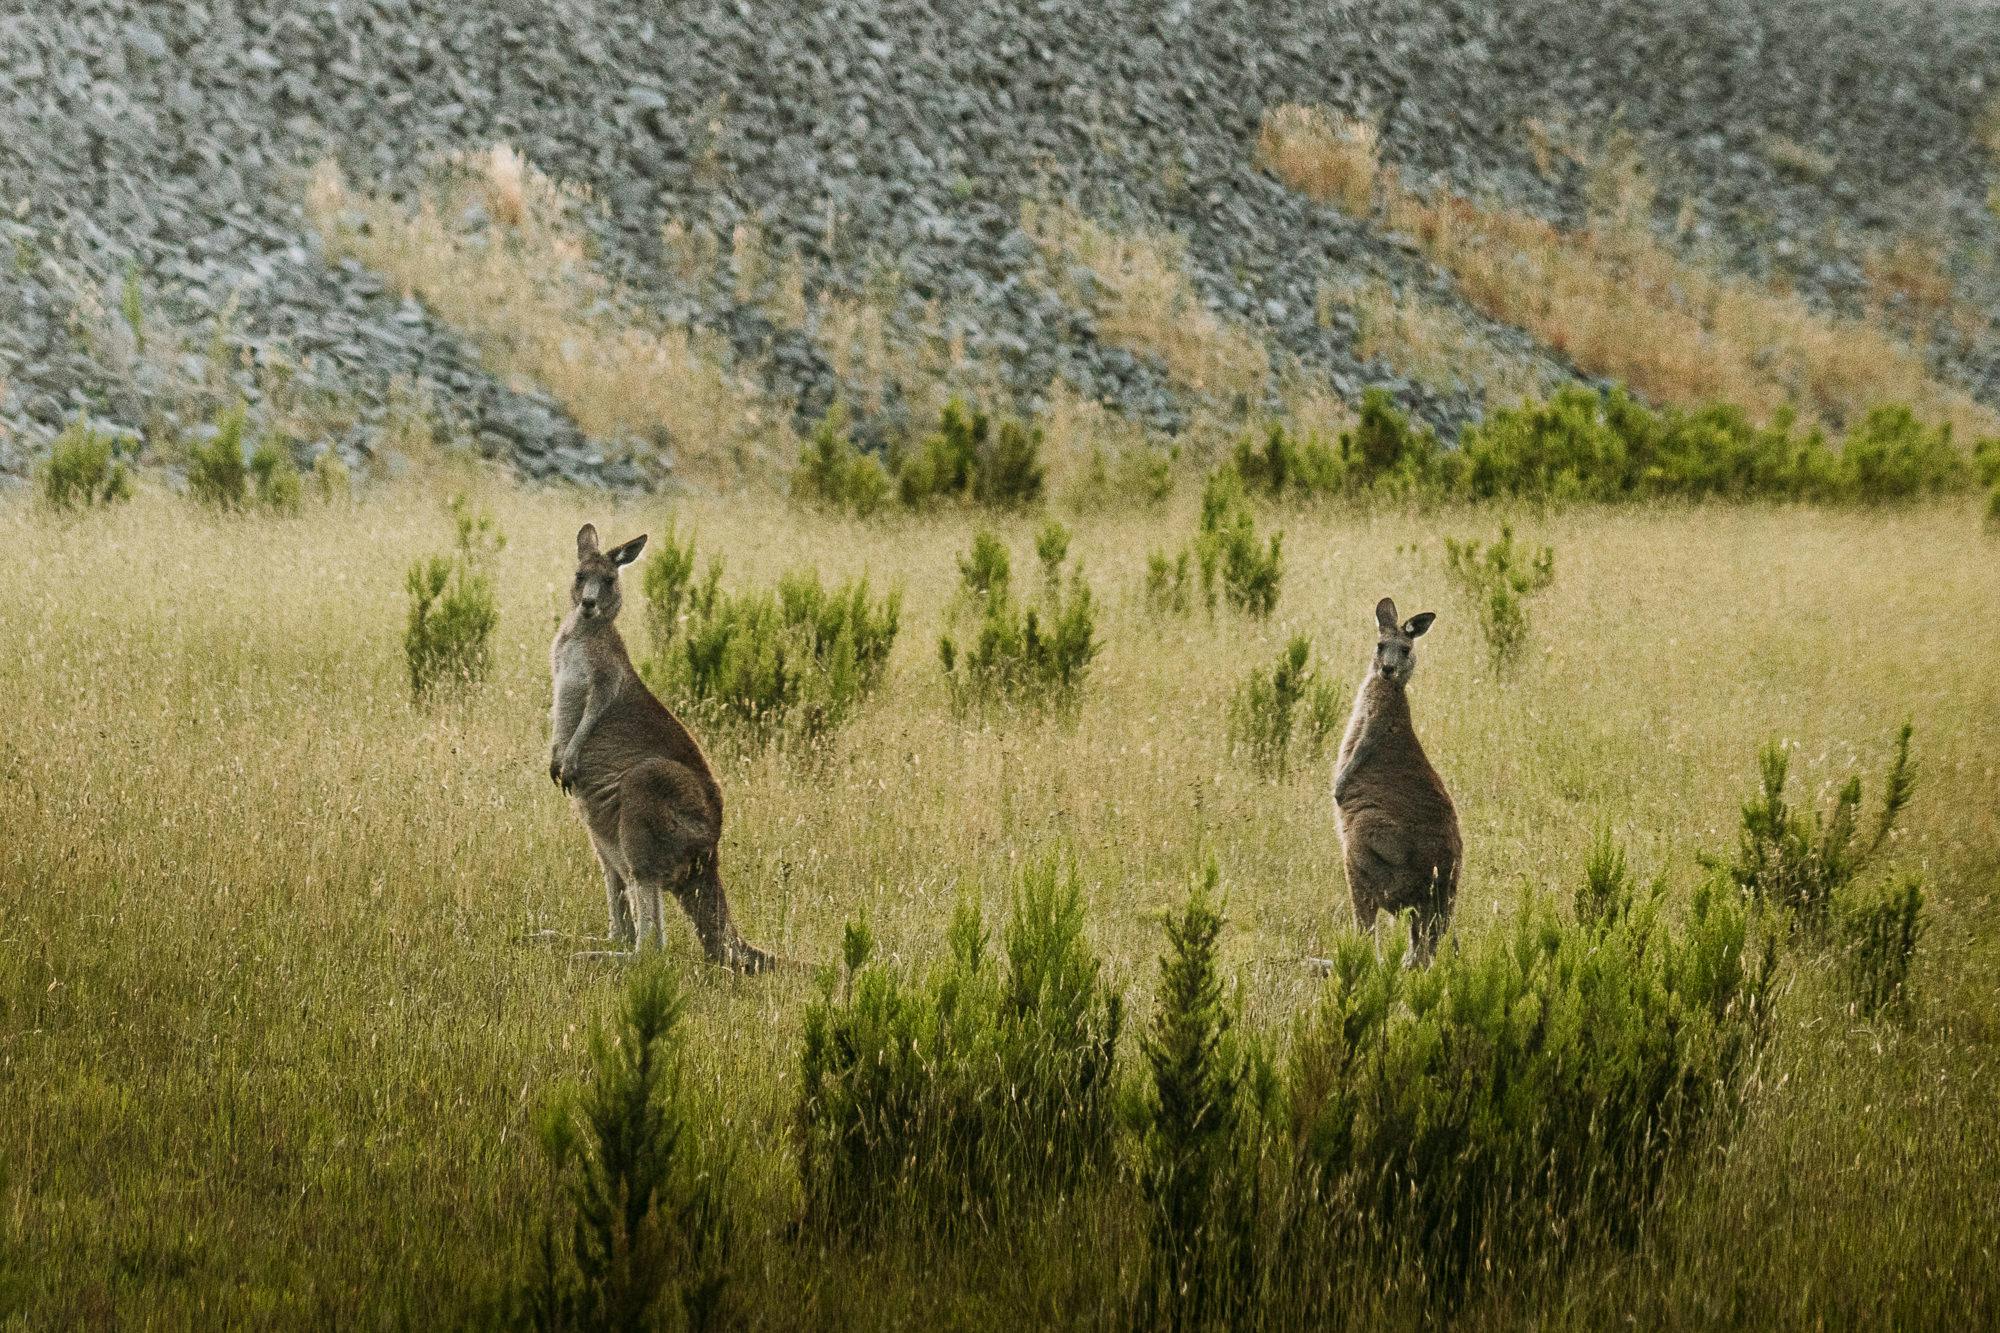 Two kangaroos